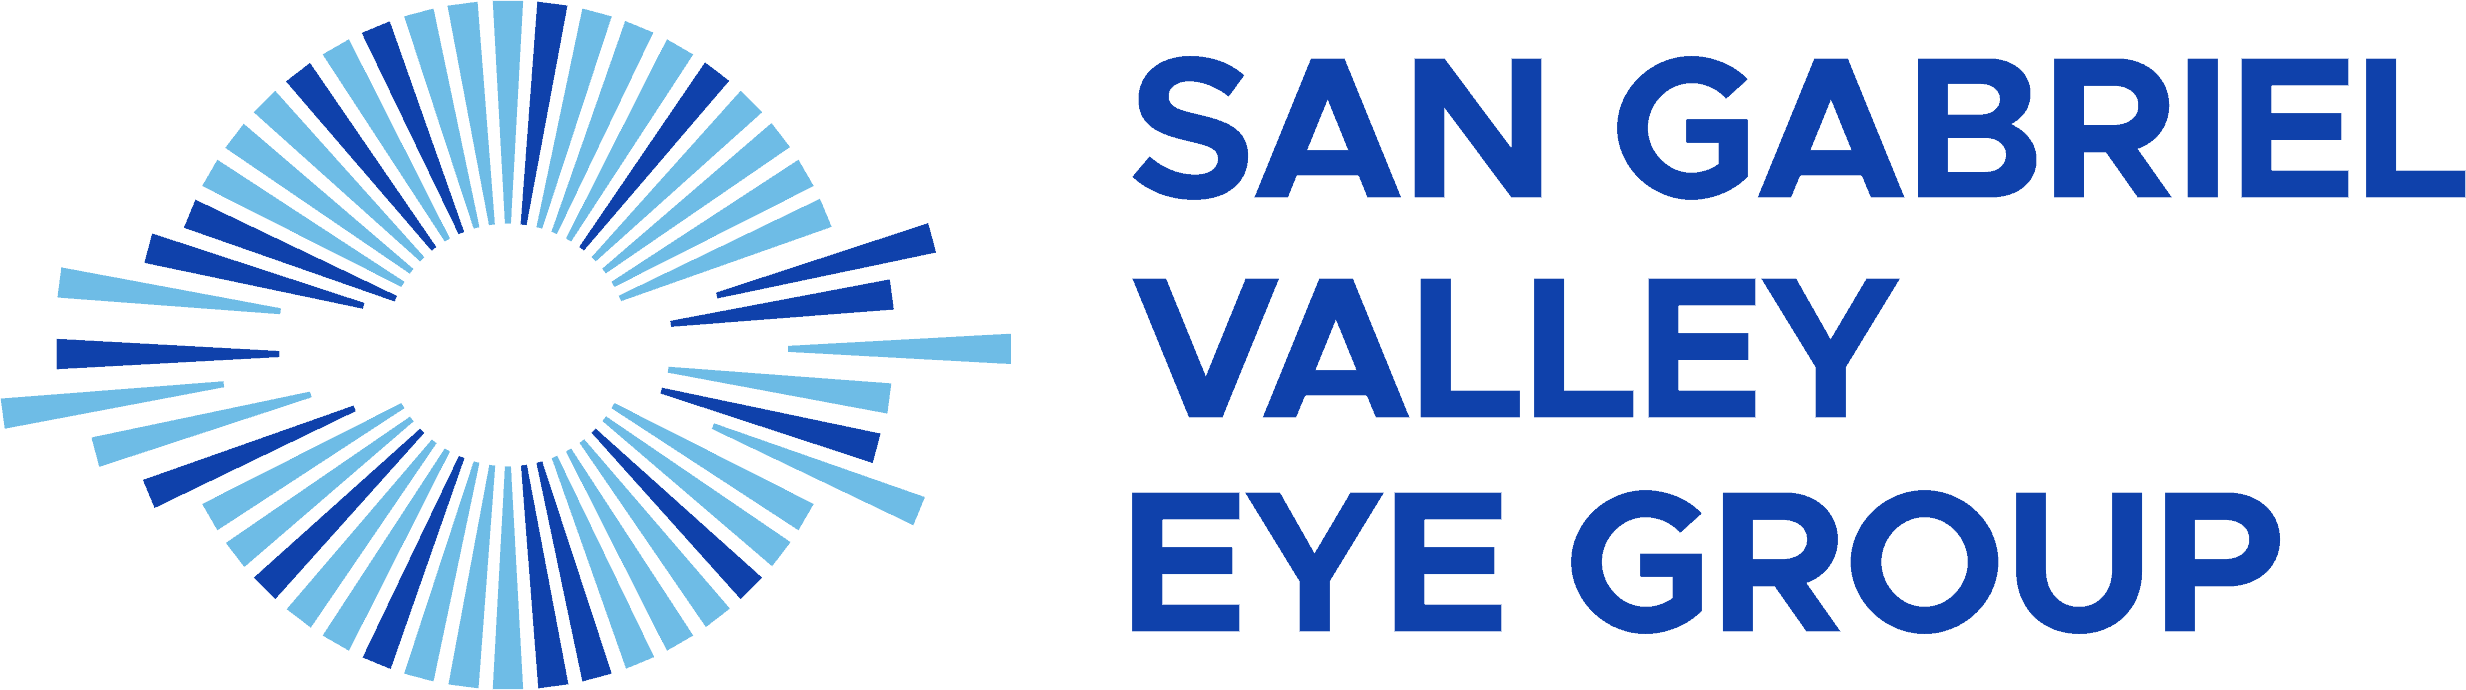 San Gabriel Valley Eye Group